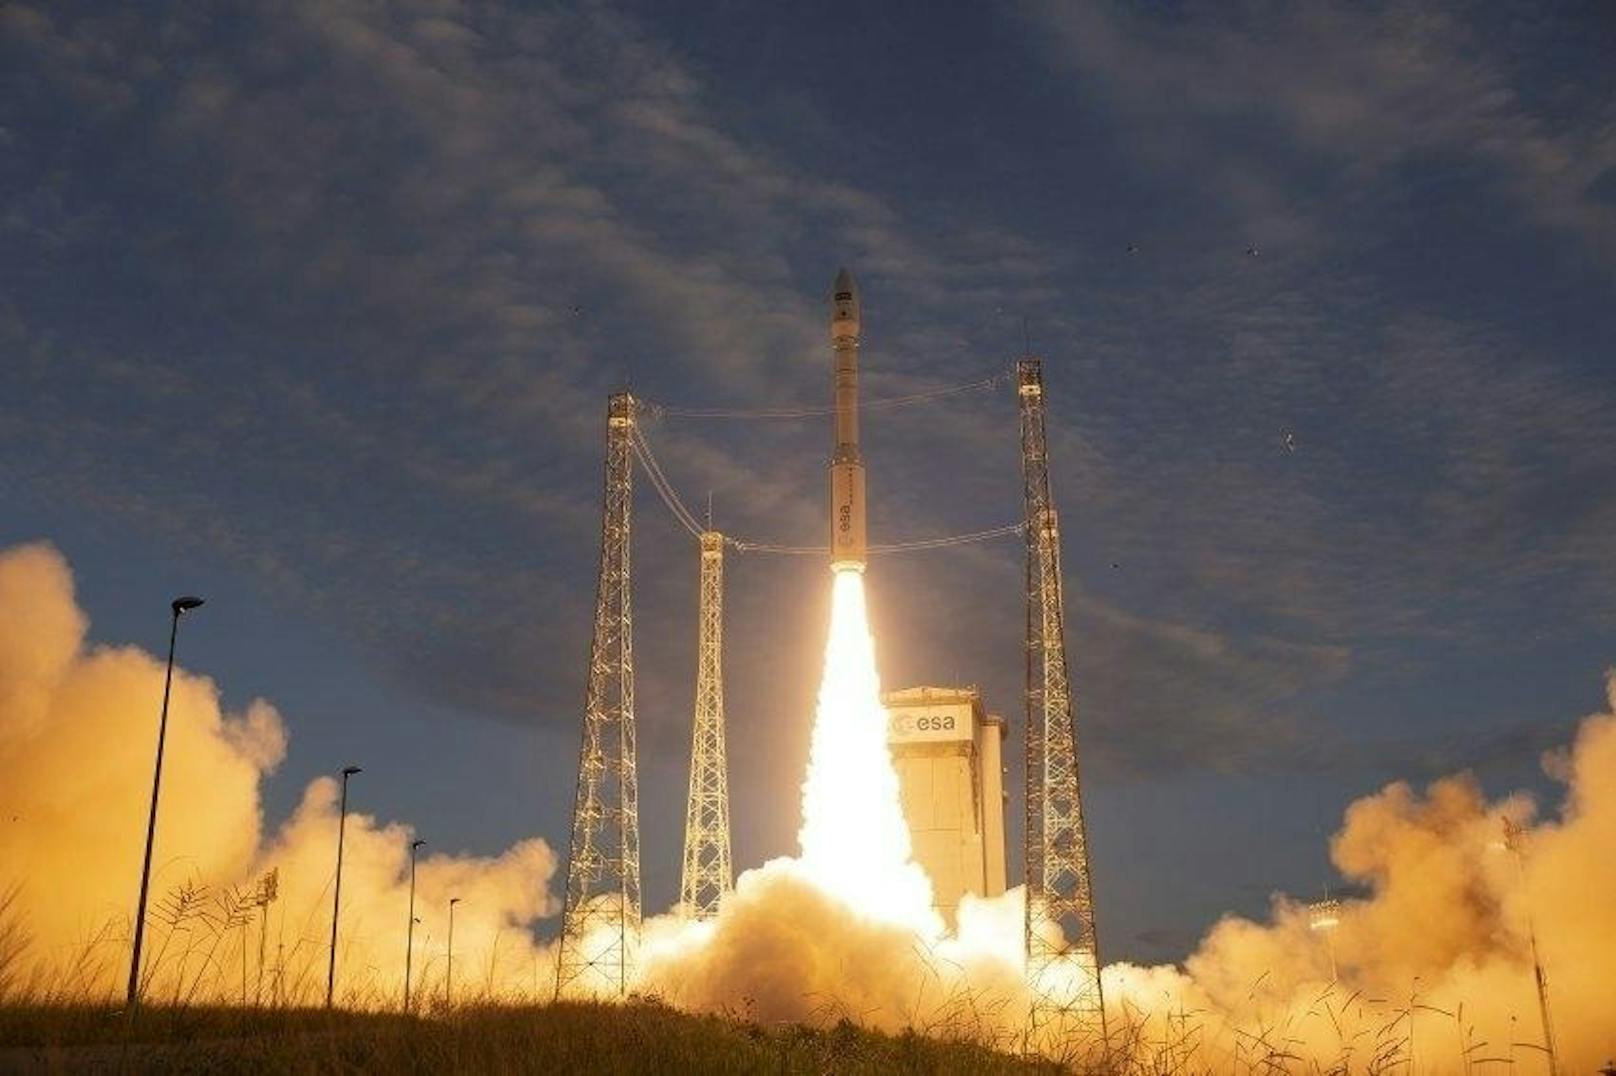 Der Satellit "Aeolus" ist am Mittwoch gegen 23.20 Uhr erfolgreich vom Weltraumbahnhof Kourou (Französisch-Guayana, Südamerika) ins All gestartet.